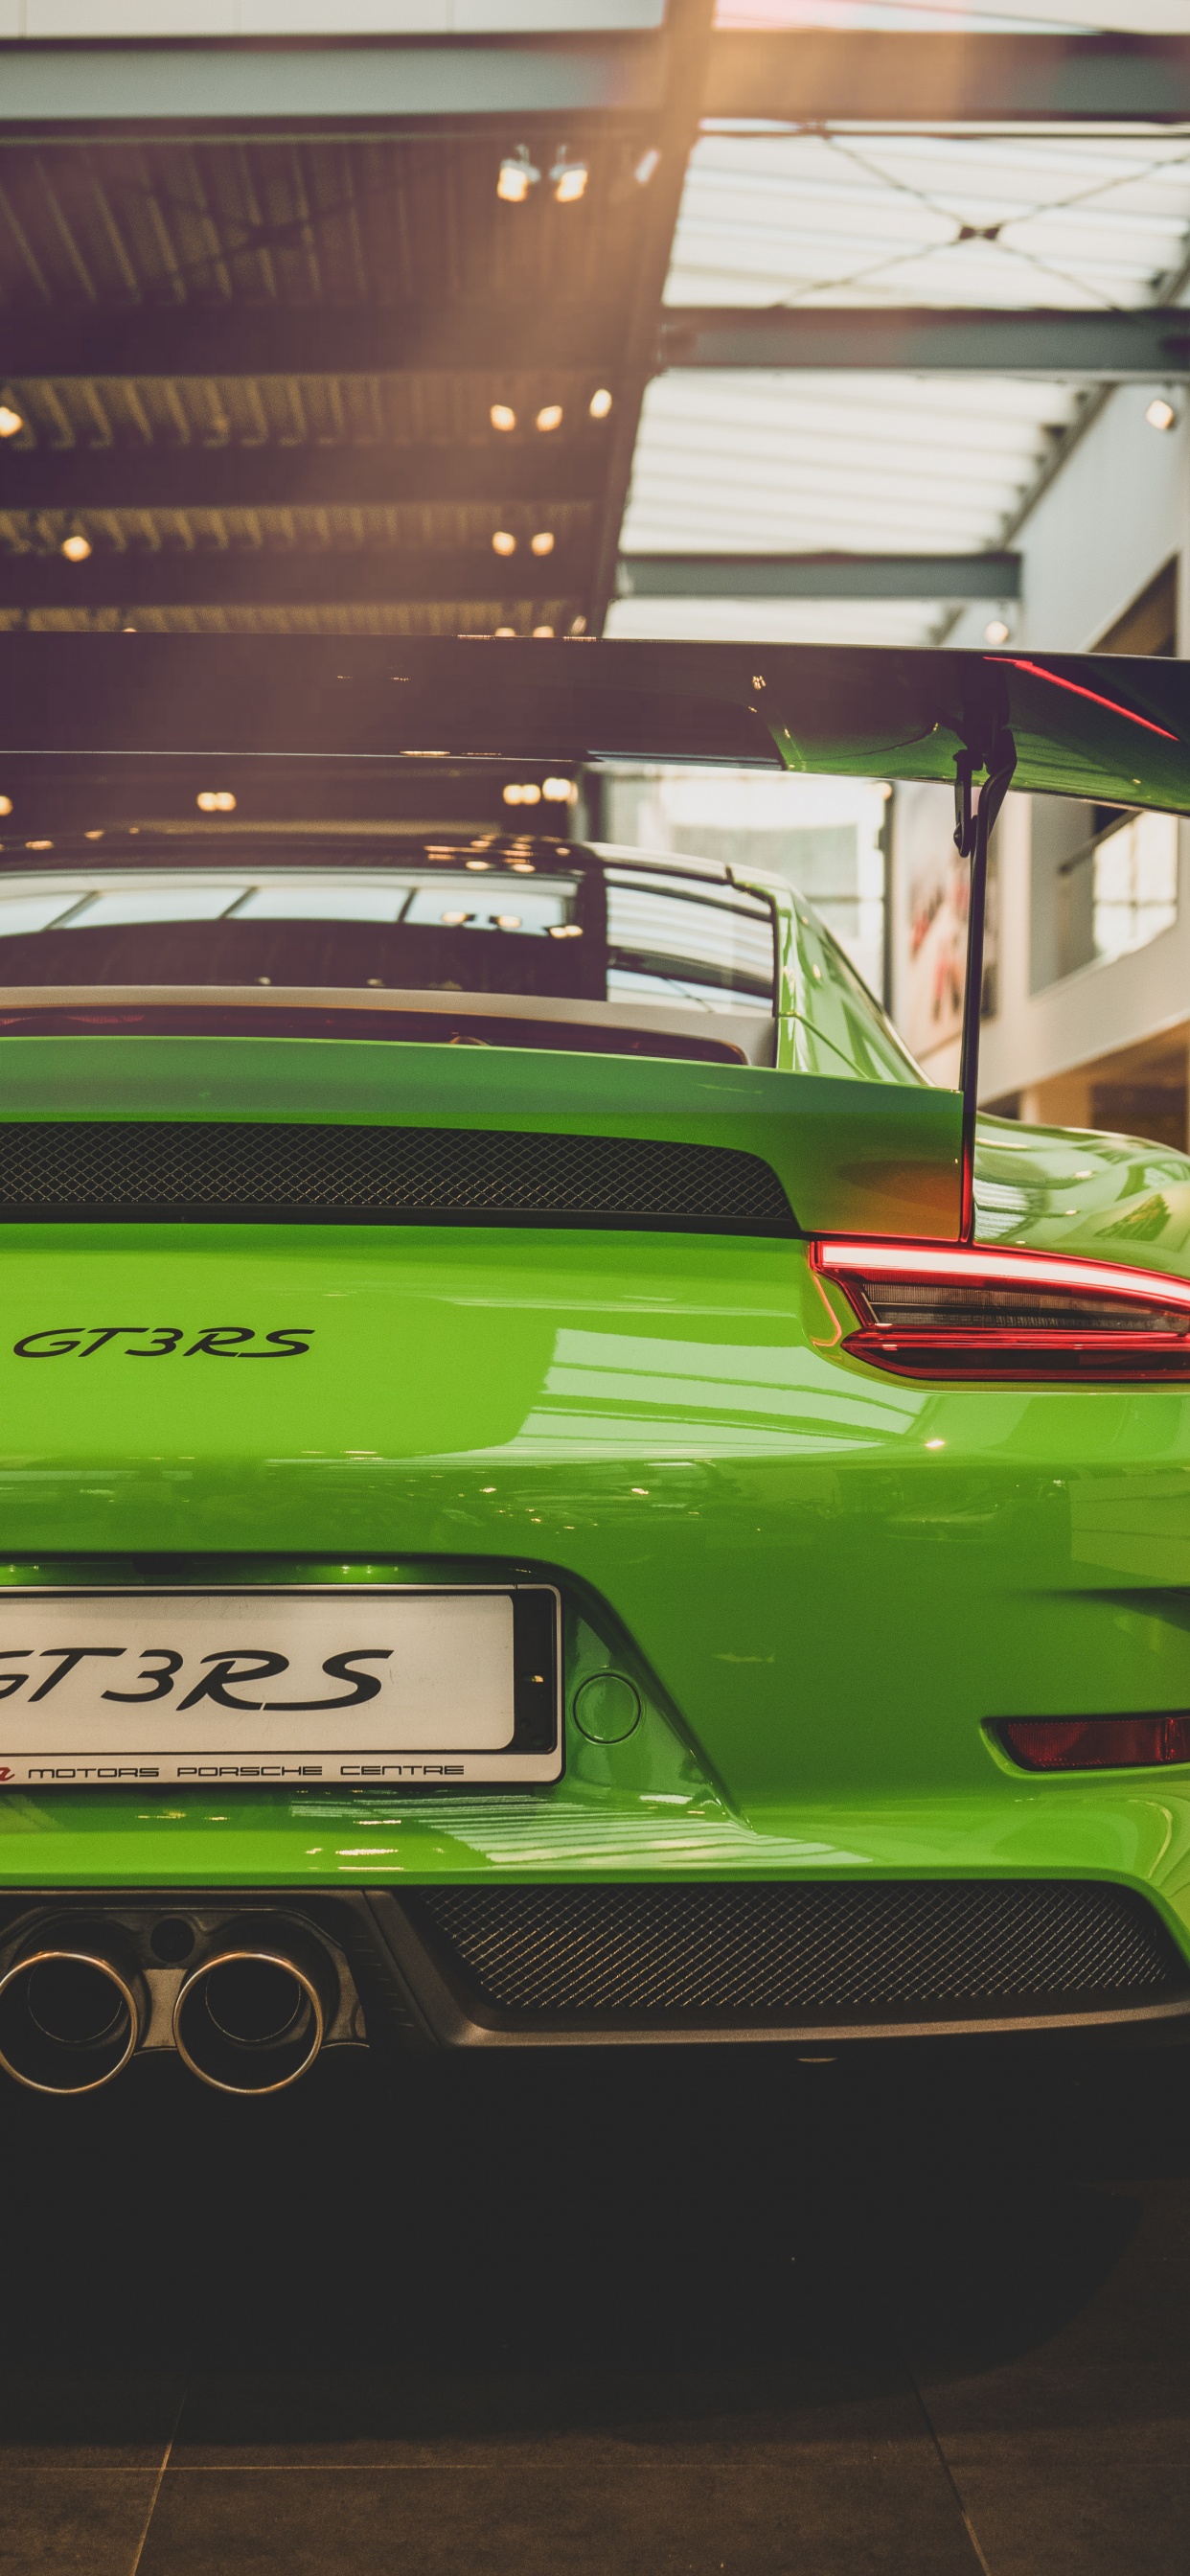 Porsche 911 Verde Estacionado Frente al Edificio. Wallpaper in 1242x2688 Resolution